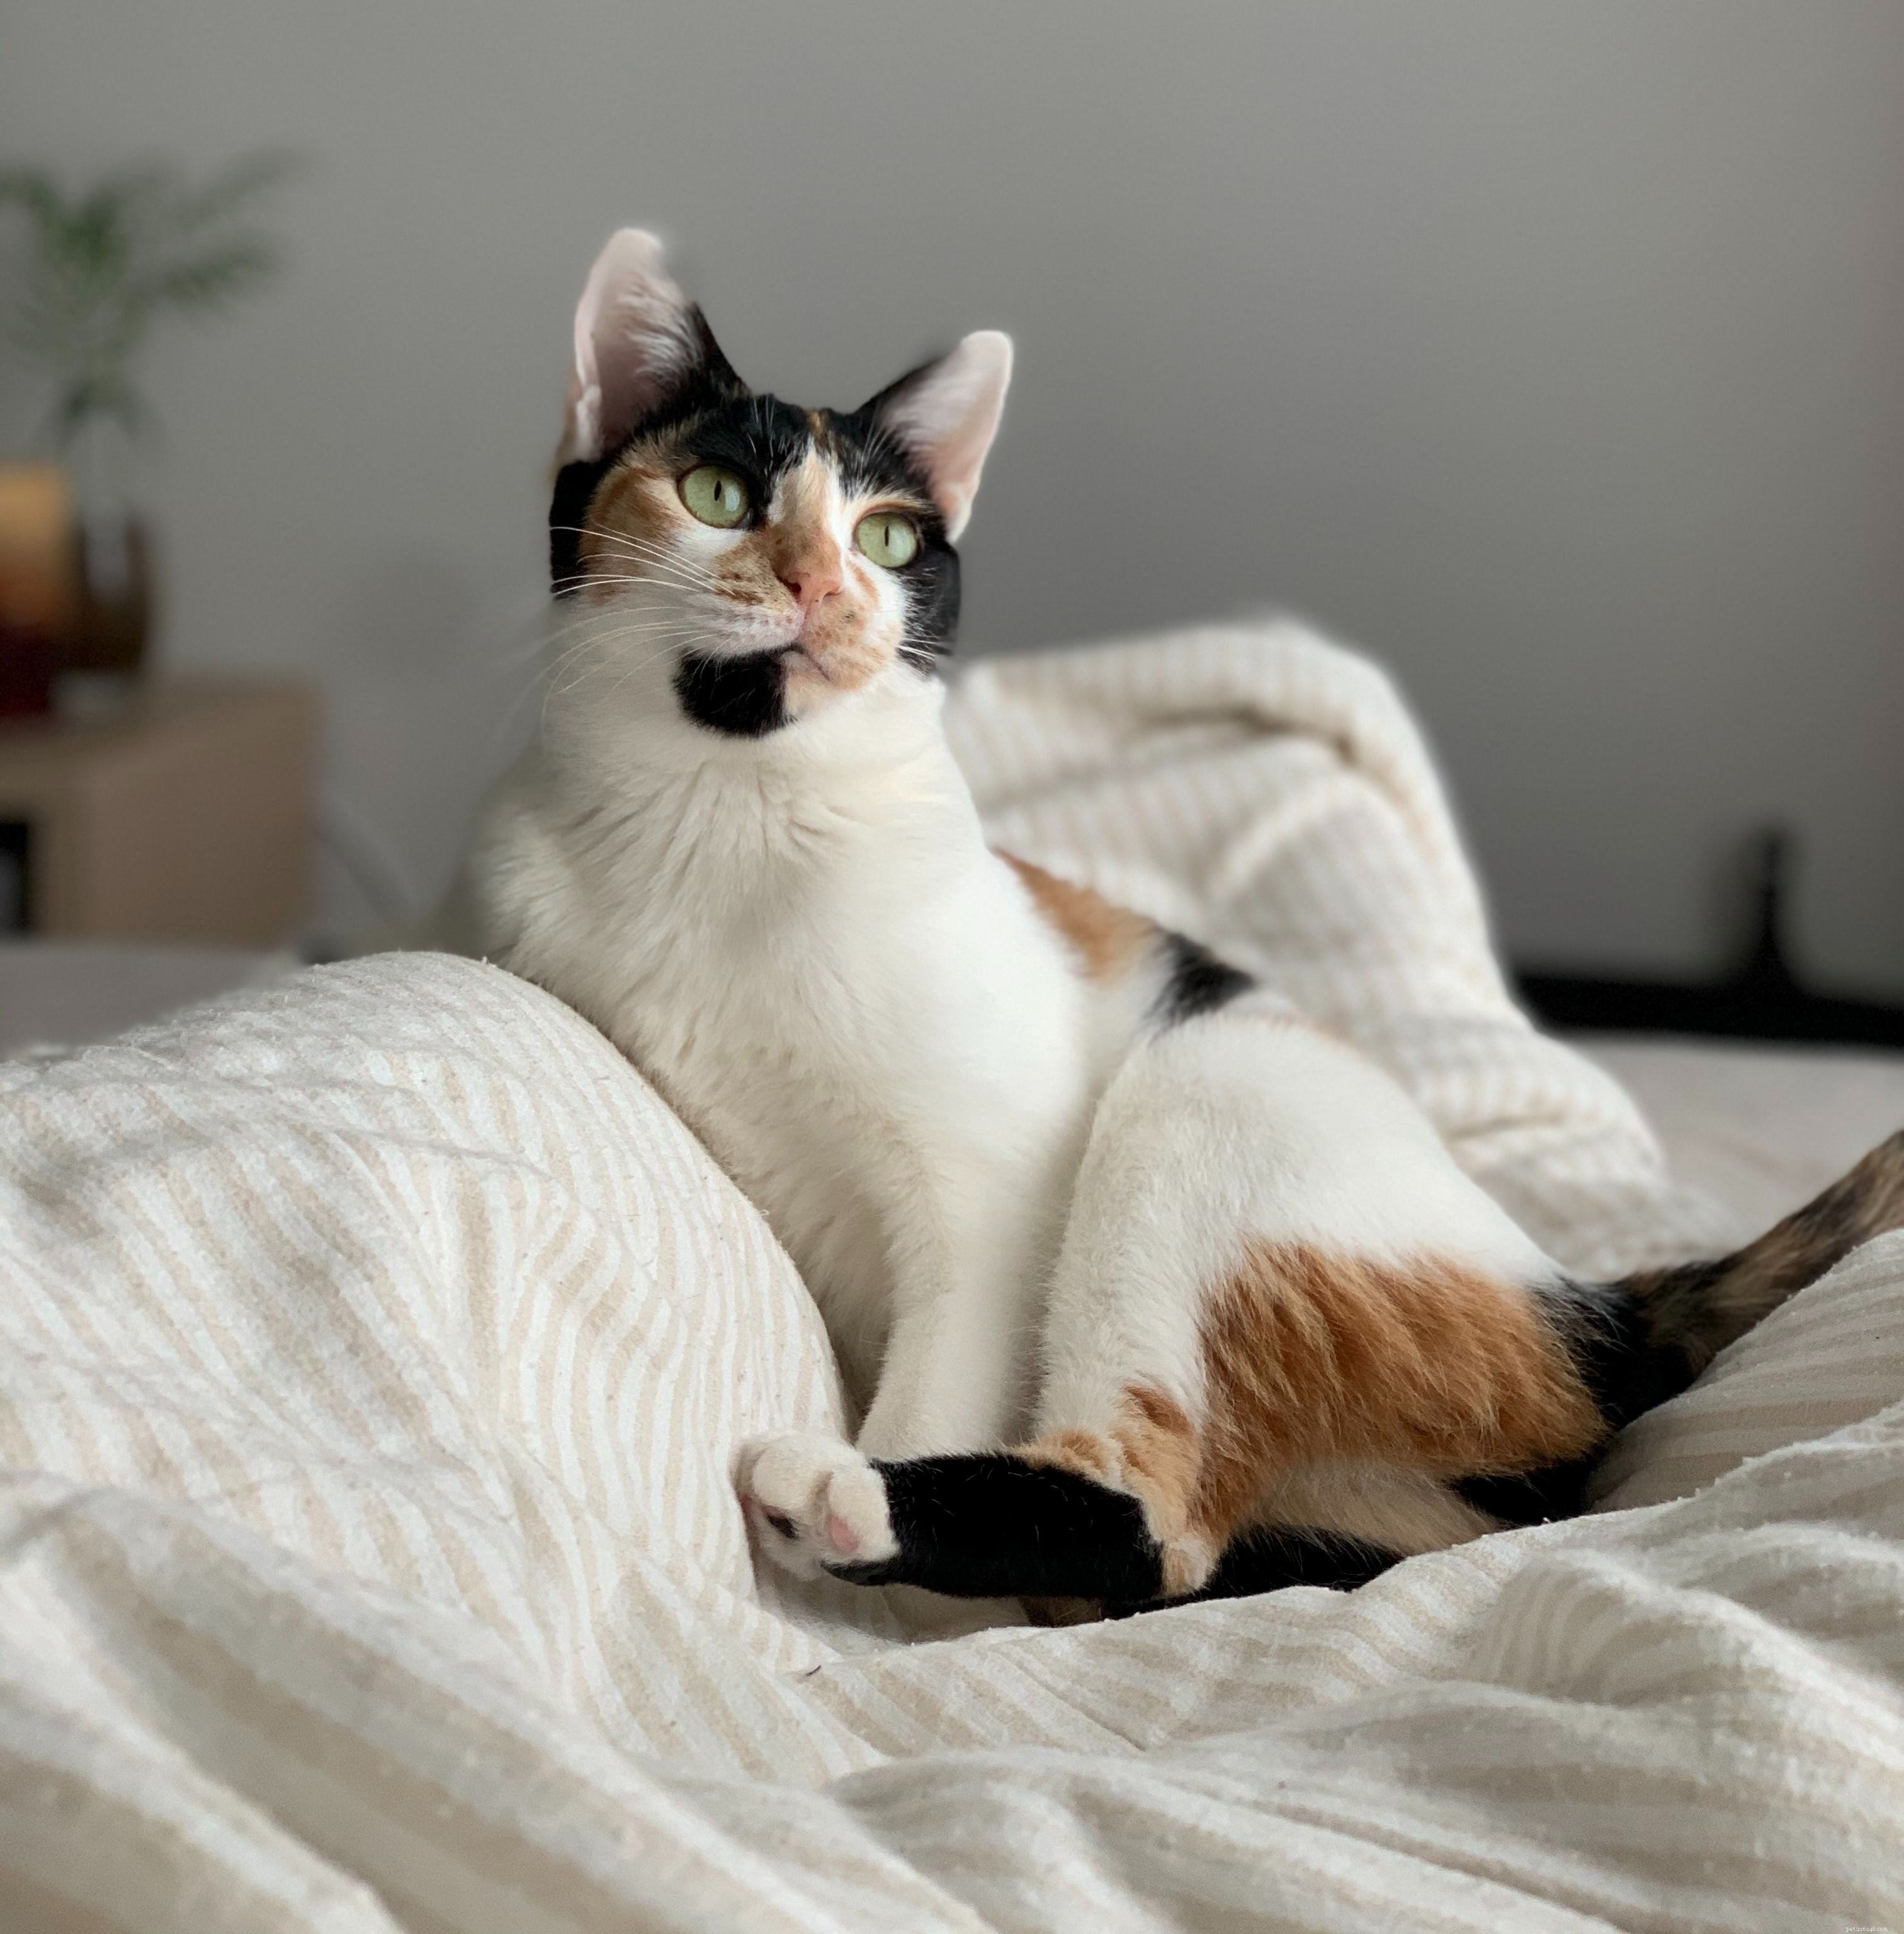 Eteriska oljor har ett brett användningsområde, från lugnande aromaterapi till att få våra hem och skönhetsprodukter att lukta gott, men de kan också skada katter .